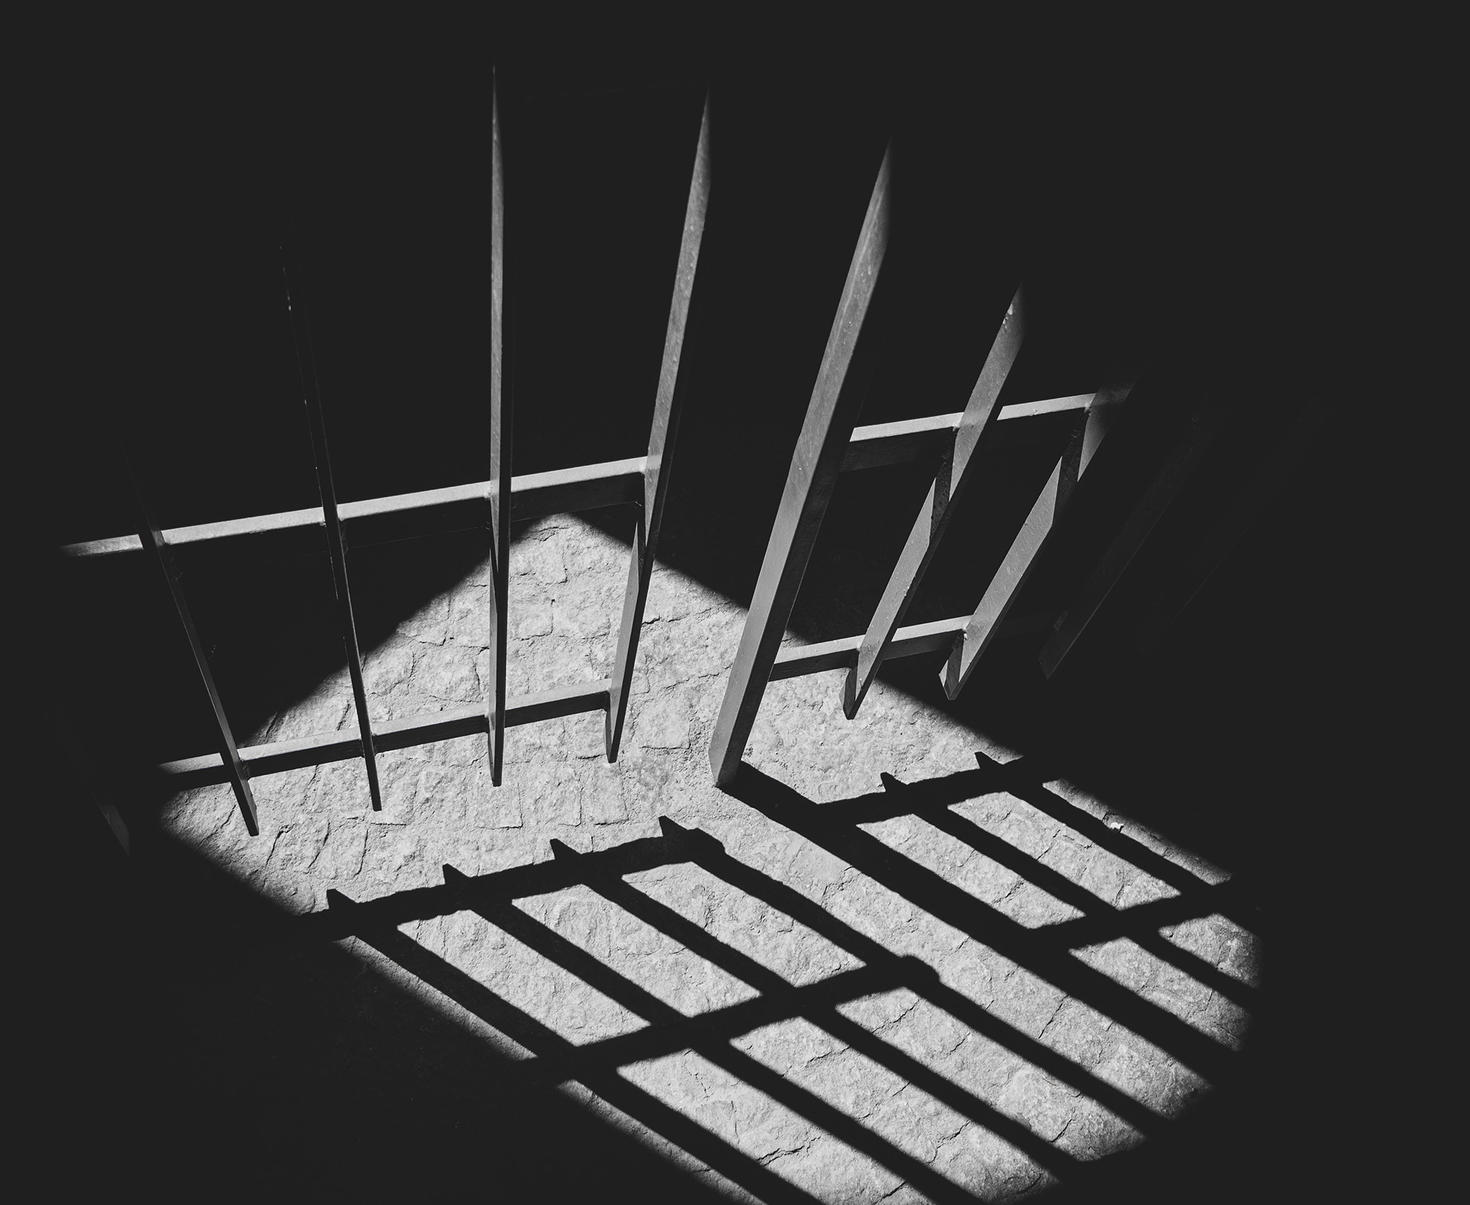 Les barreaux de la prison projettent une ombre